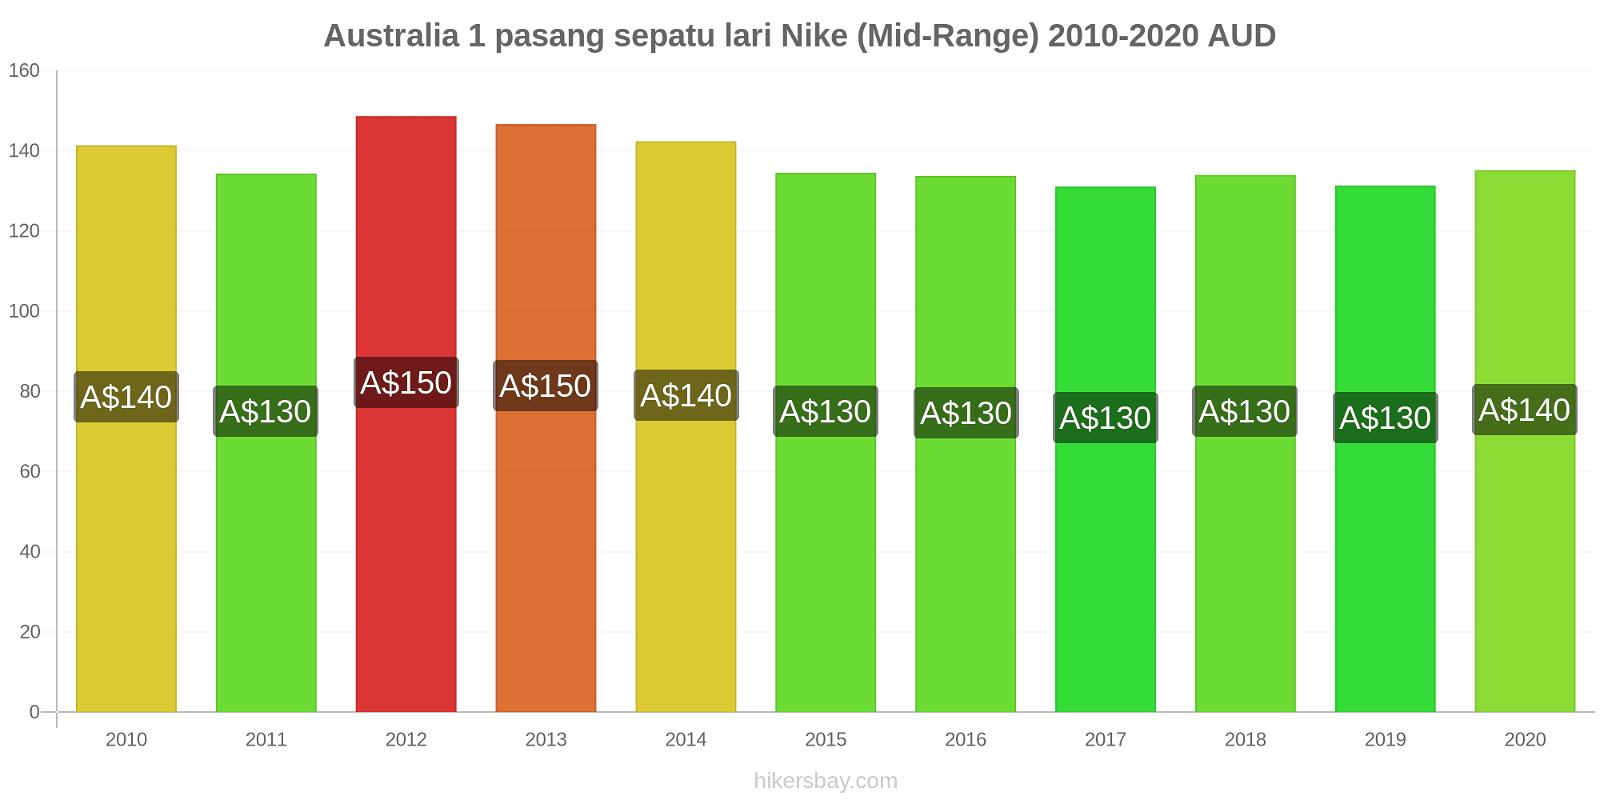 Australia perubahan harga 1 pasang sepatu lari Nike (Mid-Range) hikersbay.com